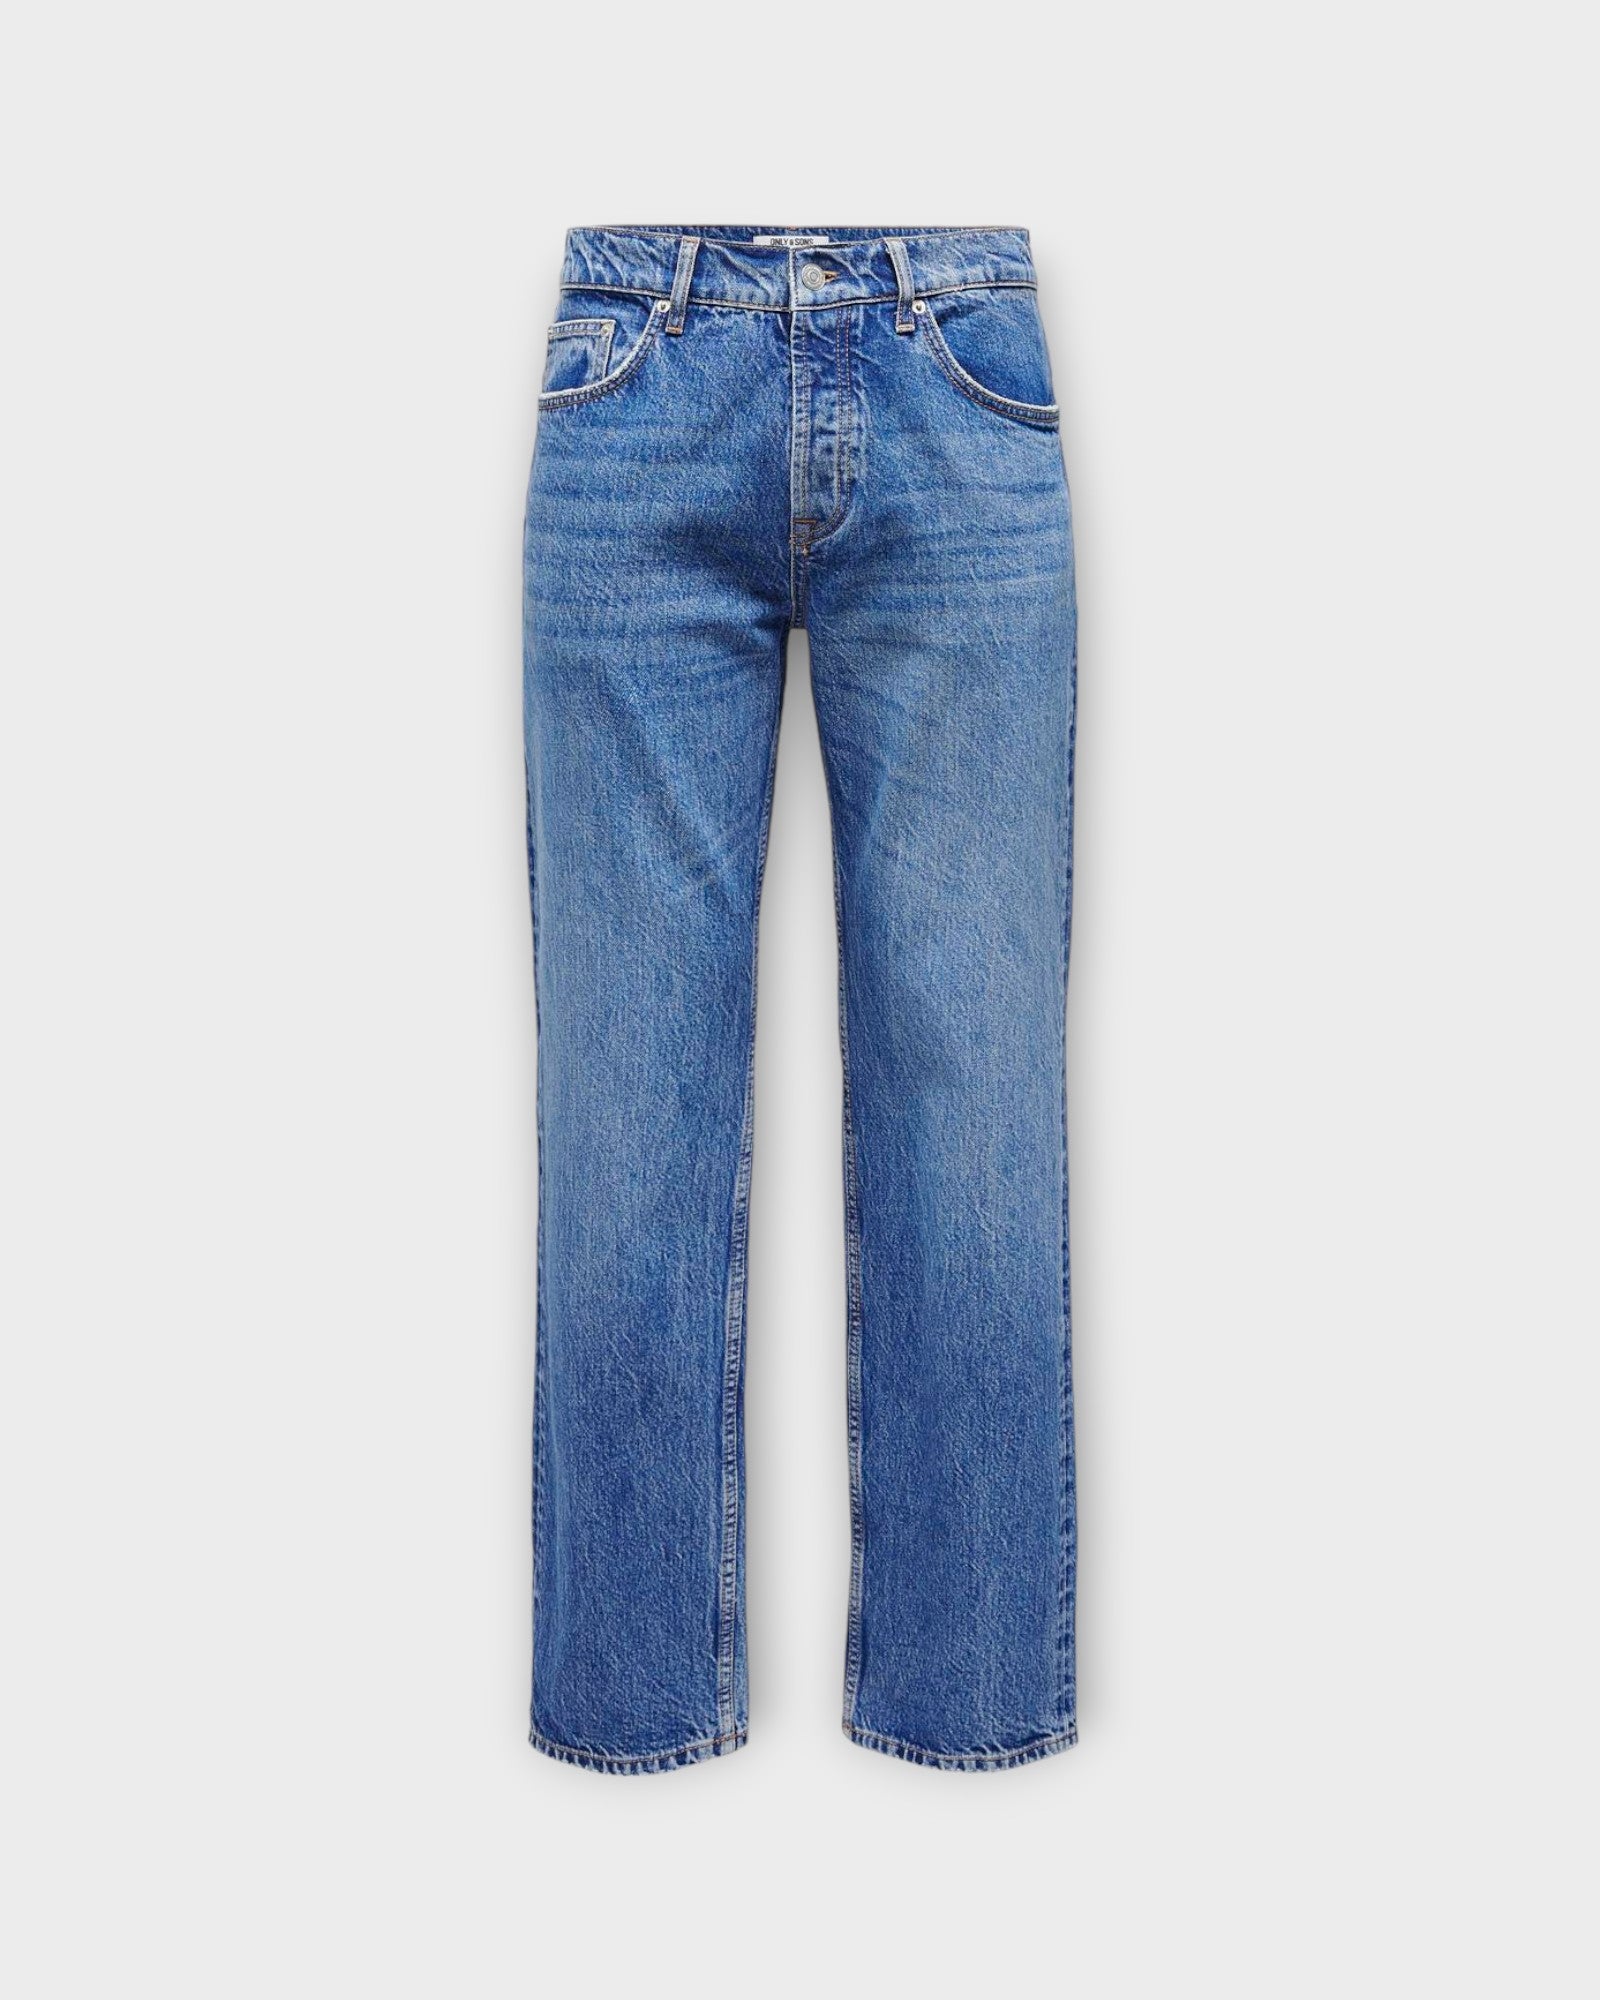 Edge Straight Bromo 0017 Bright Blue Denim fra Only and Sons. Baggy fit jeans til mænd. Her set forfra.